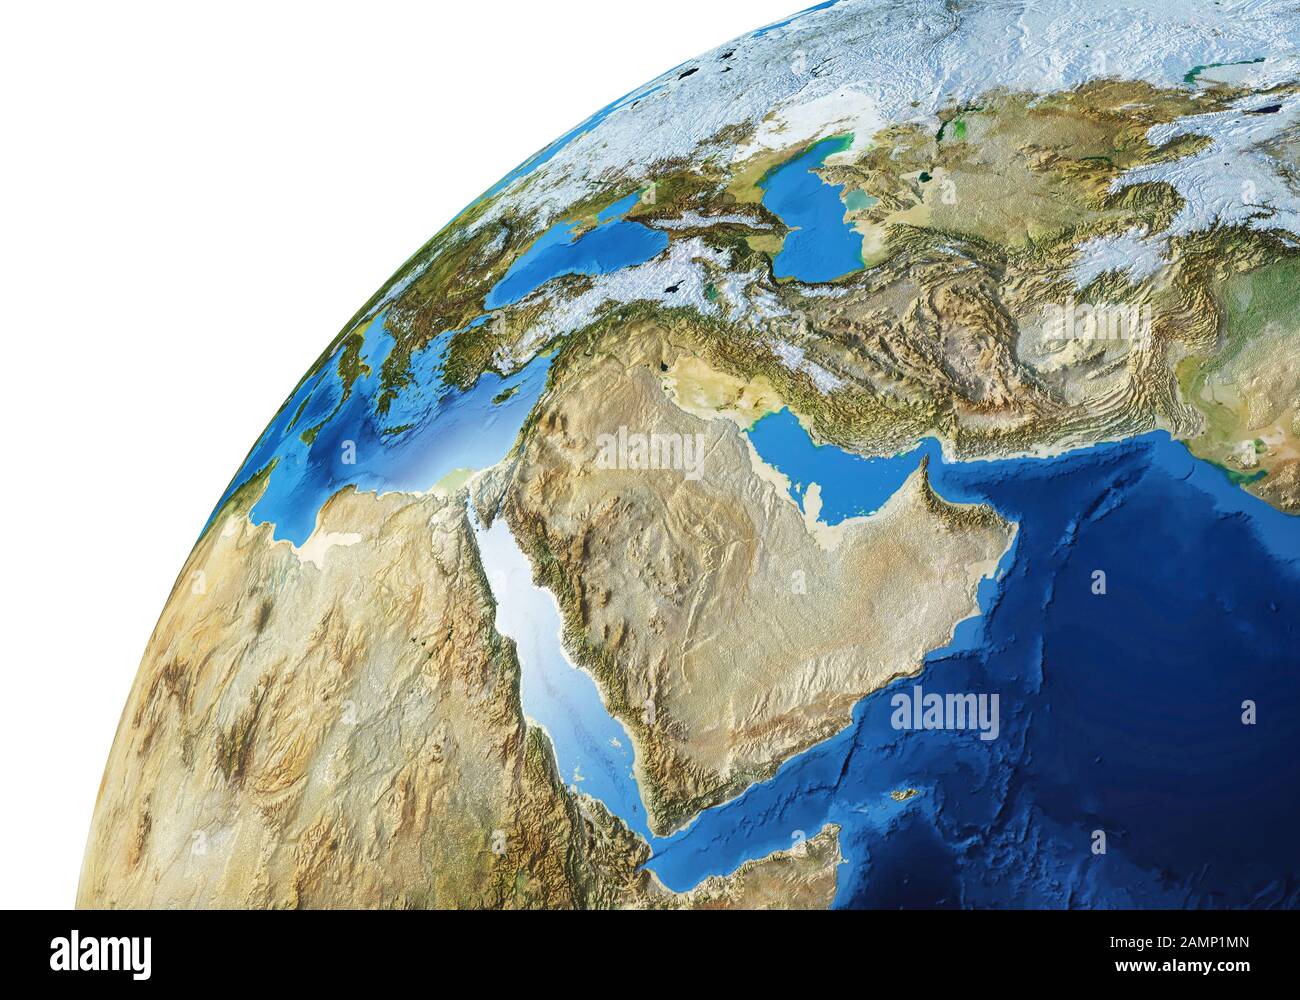 Globe terrestre proche de la région du Moyen-Orient. Très détaillé et photo réaliste. (Cartes originales fournies par la NASA.) Banque D'Images